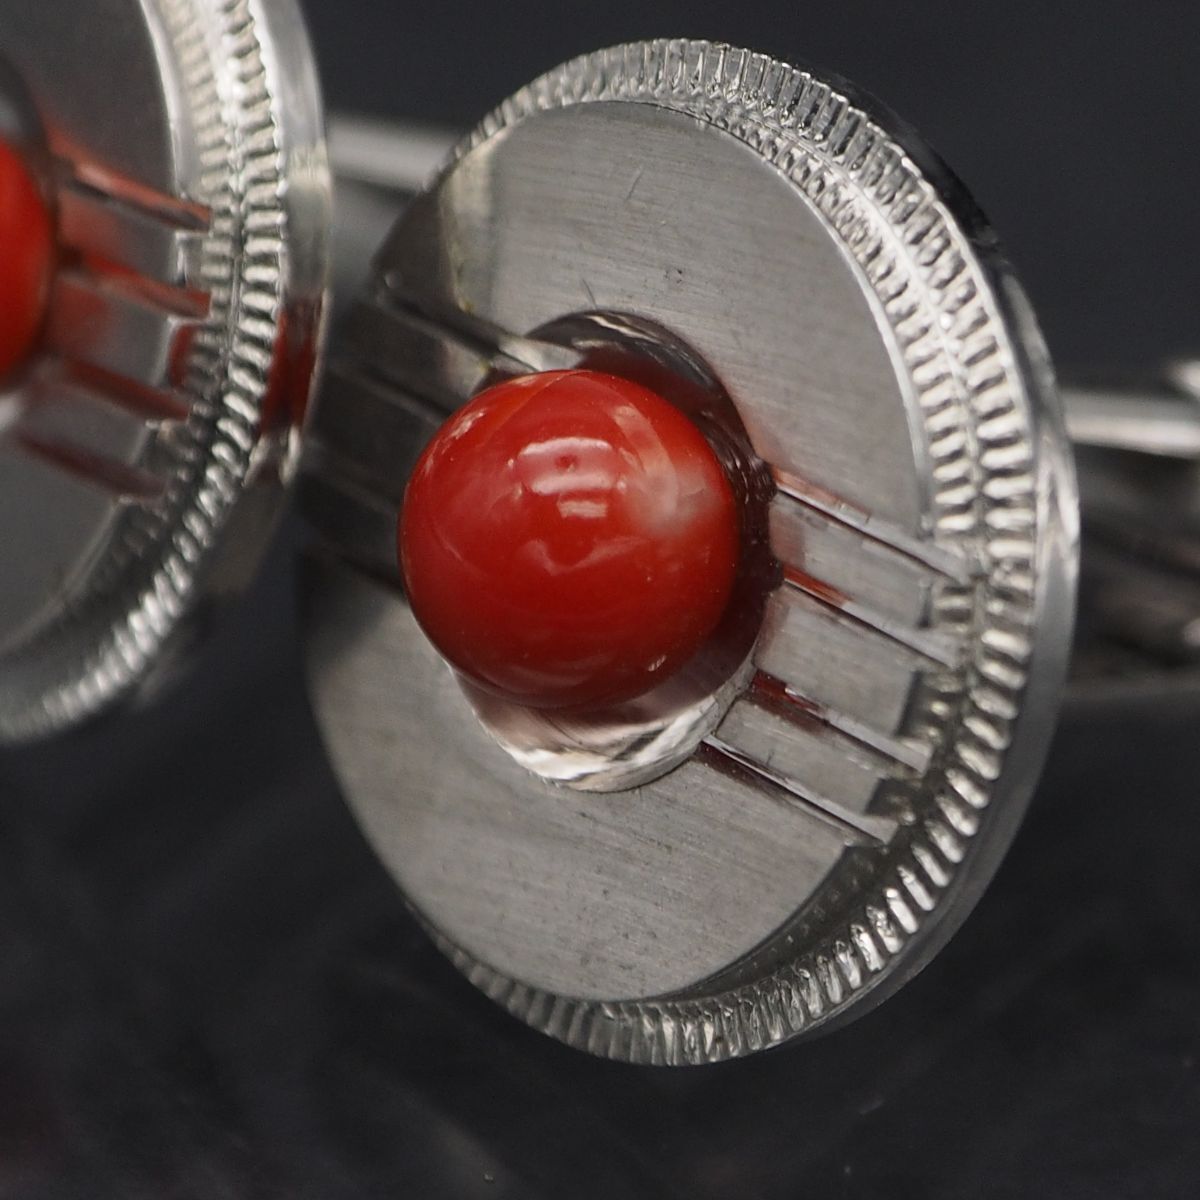 P309 red .. coral cuffs button silver design cuff links 3 month birthstone 